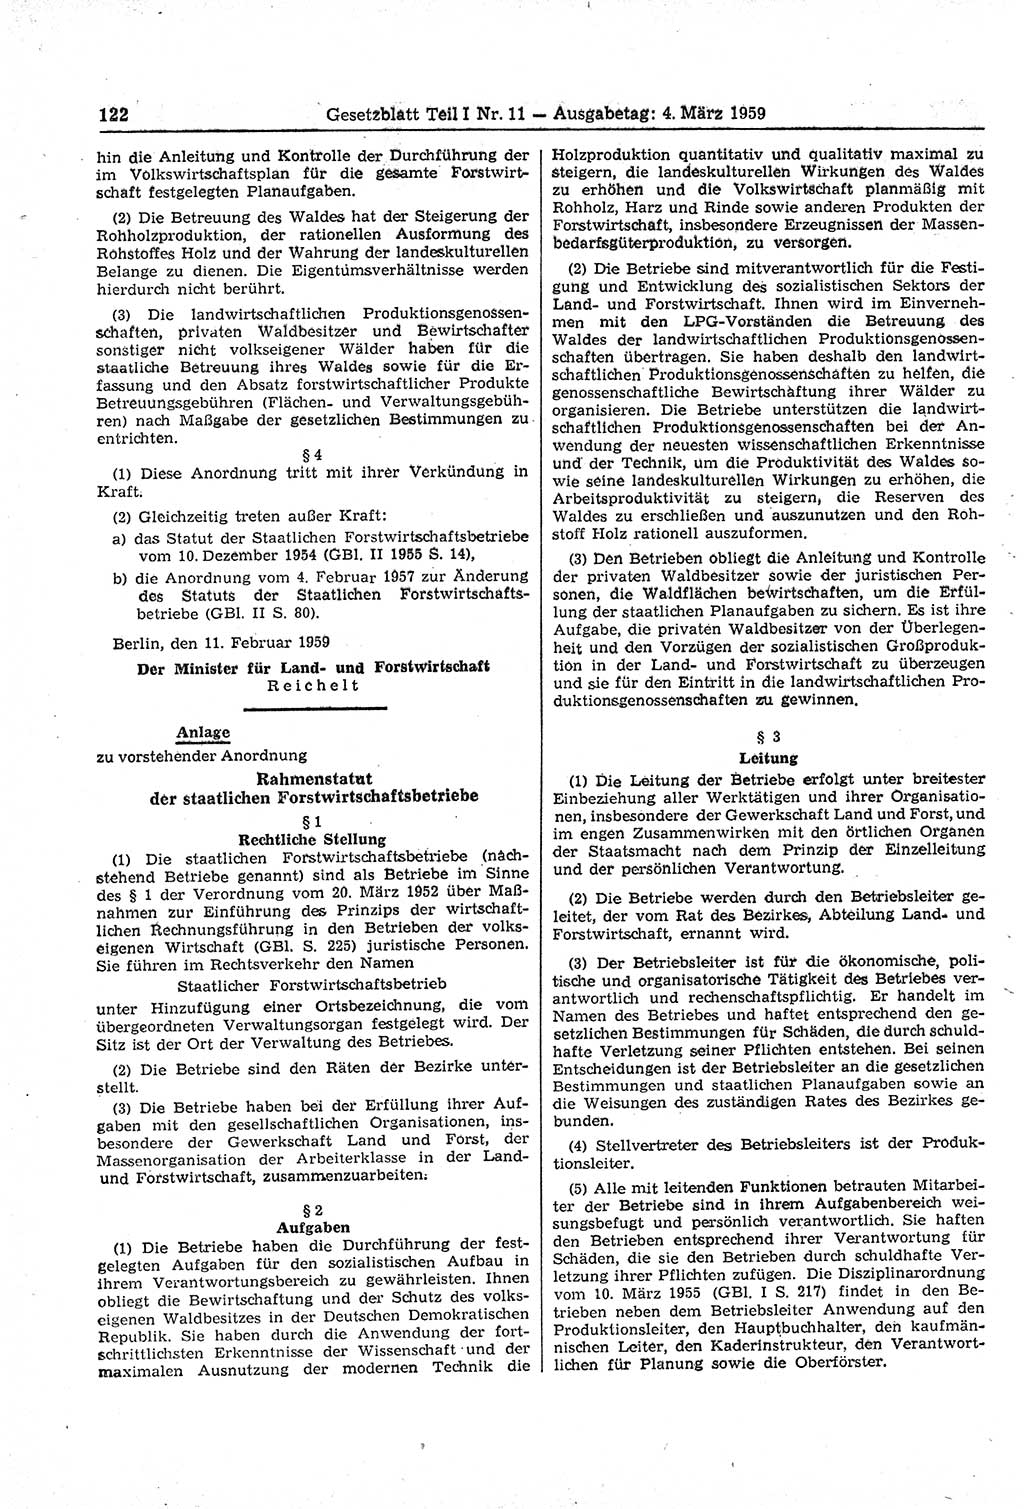 Gesetzblatt (GBl.) der Deutschen Demokratischen Republik (DDR) Teil Ⅰ 1959, Seite 122 (GBl. DDR Ⅰ 1959, S. 122)